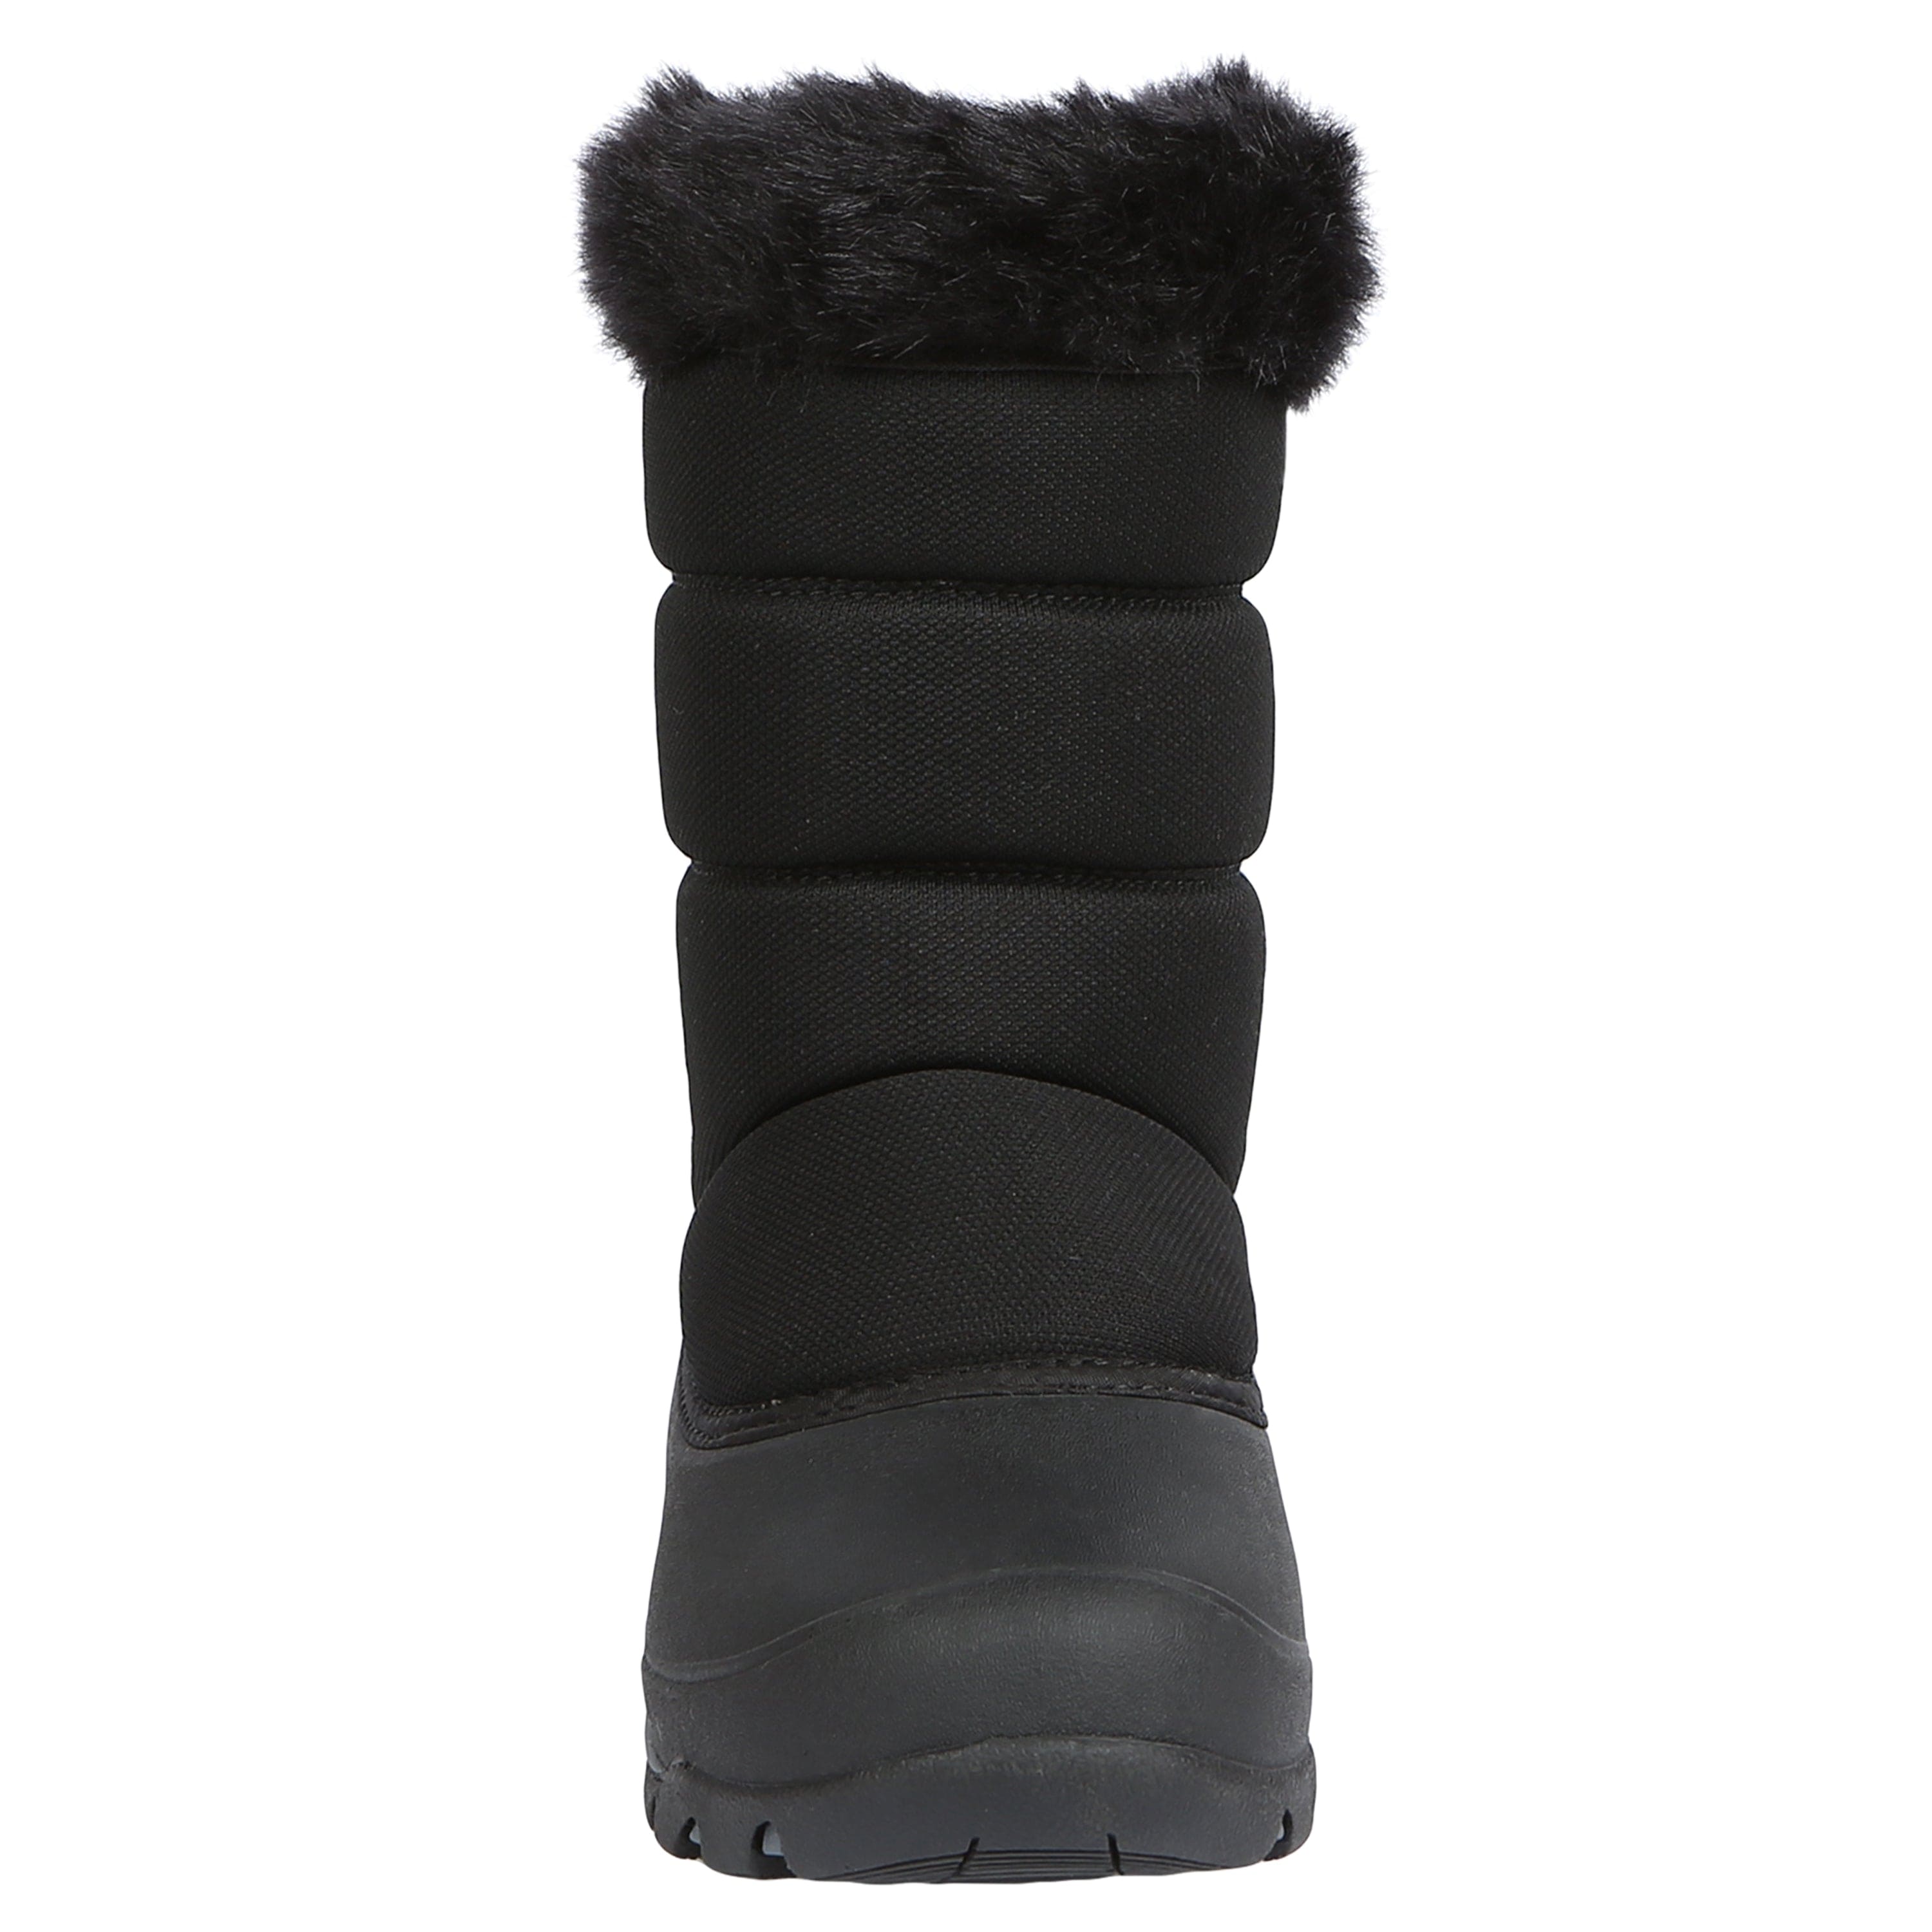 zipper winter boots